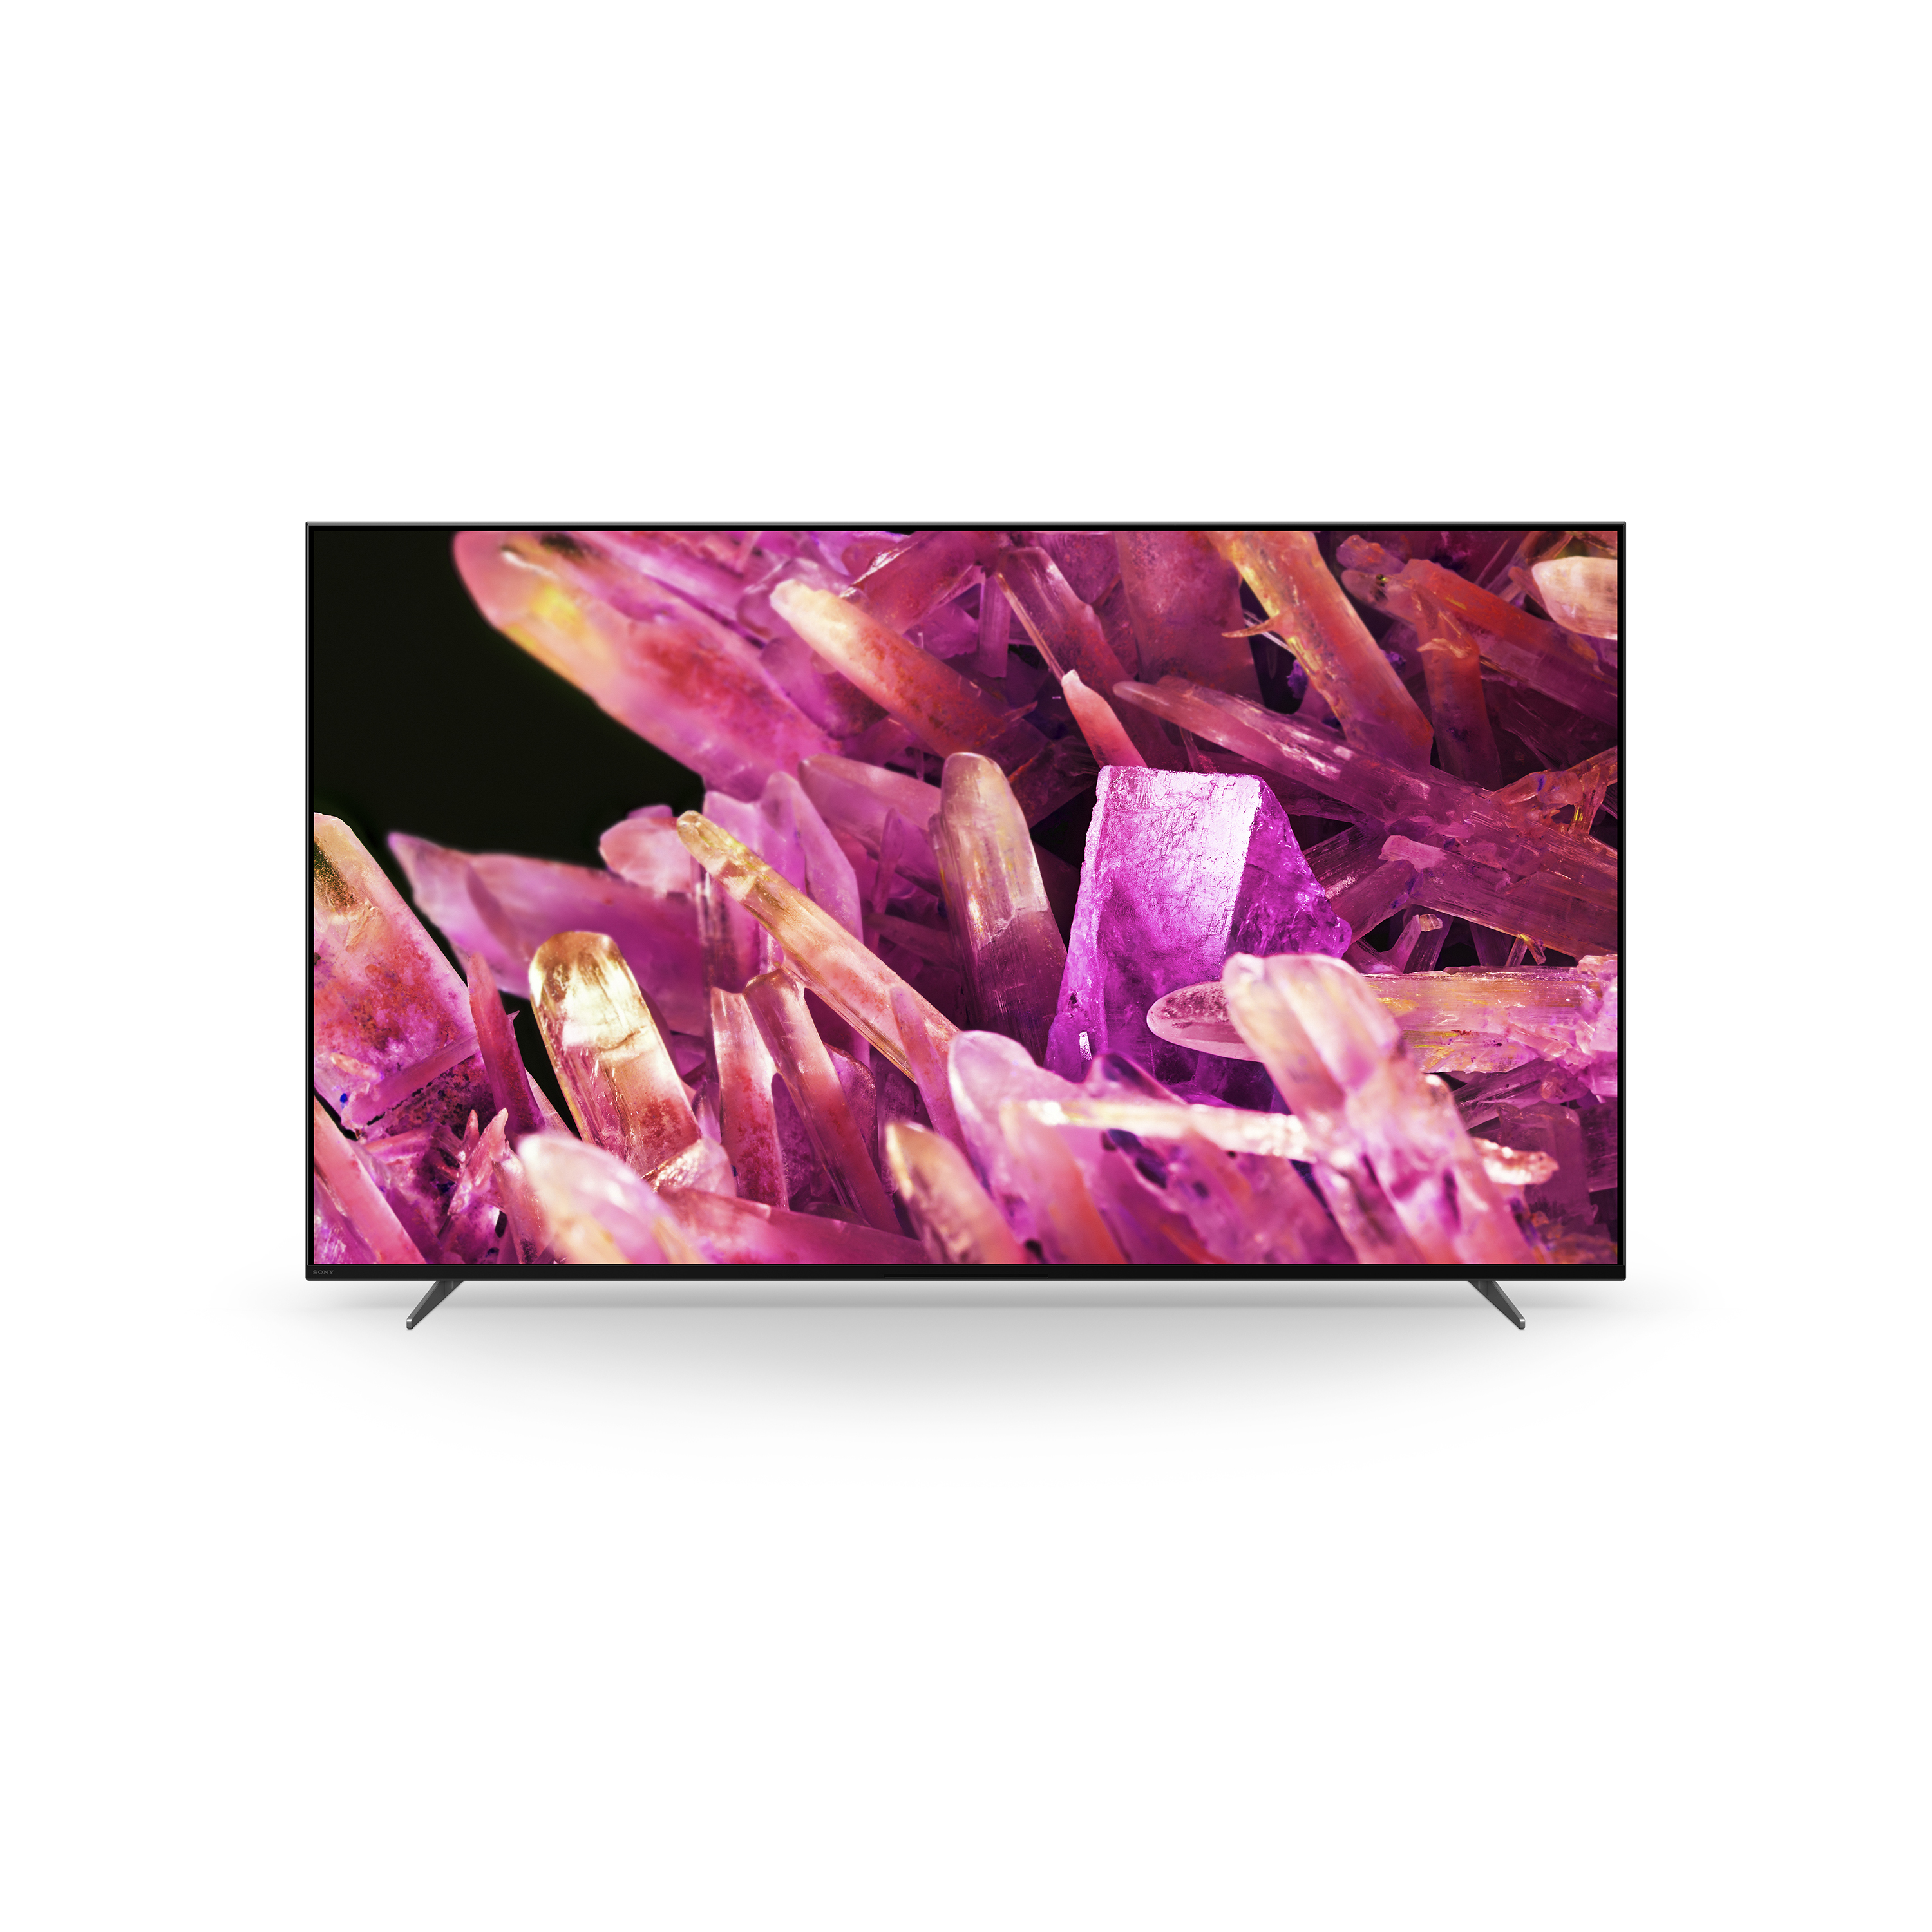 底座上 BRAVIA X90K 螢幕顯示粉紅色水晶影像的正面照